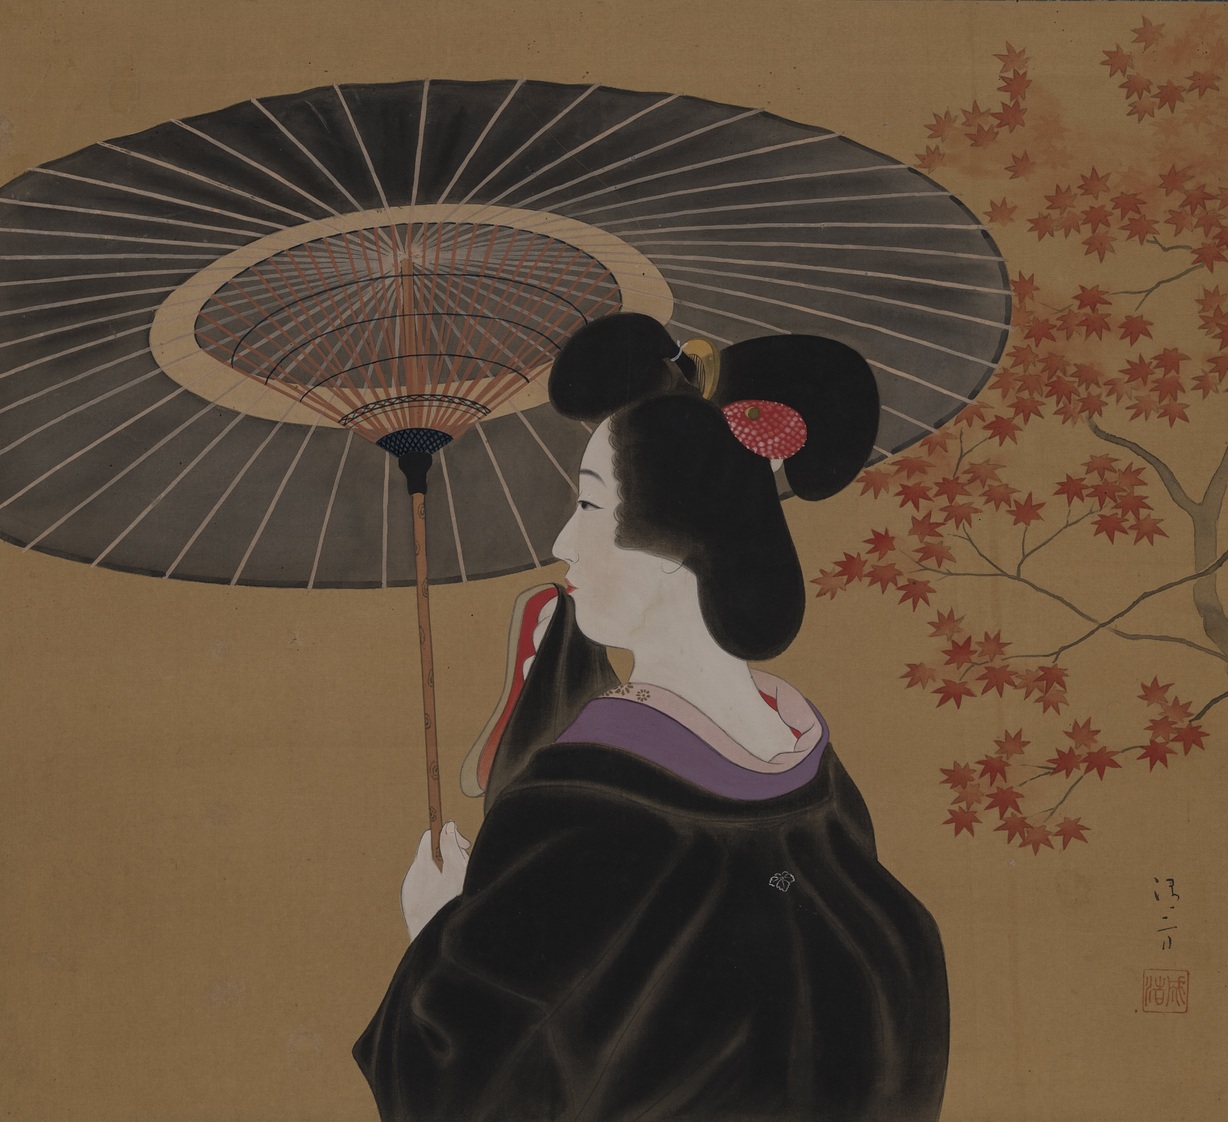 Kakemono: Cinque secoli di pittura giapponese al MAO Torino